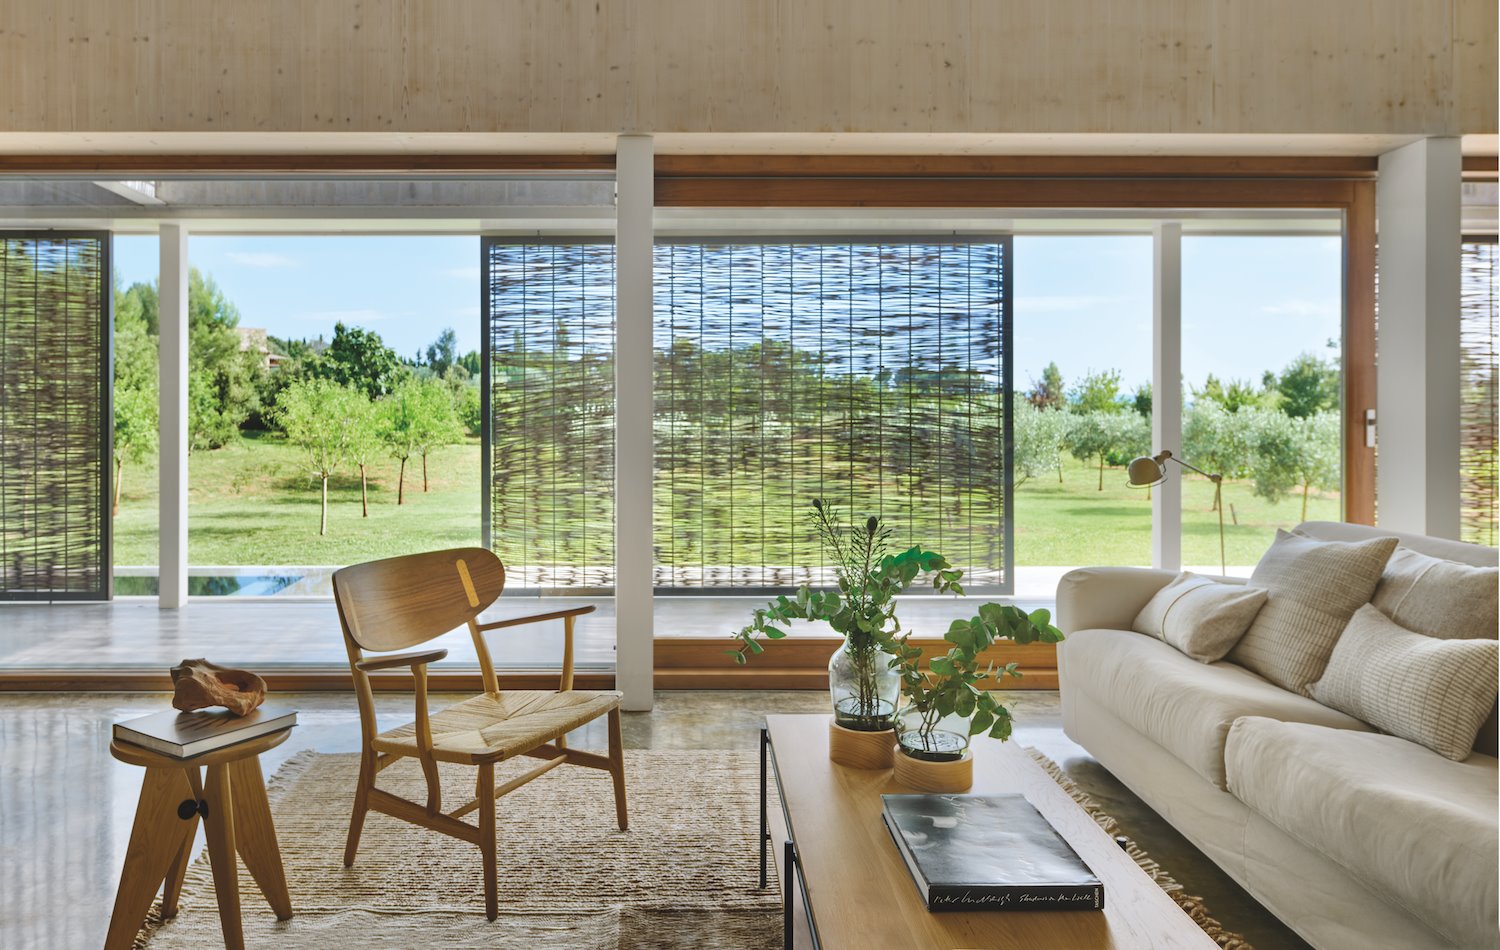 Casa moderna de piedra en camallera con bosques salon con mosquitera